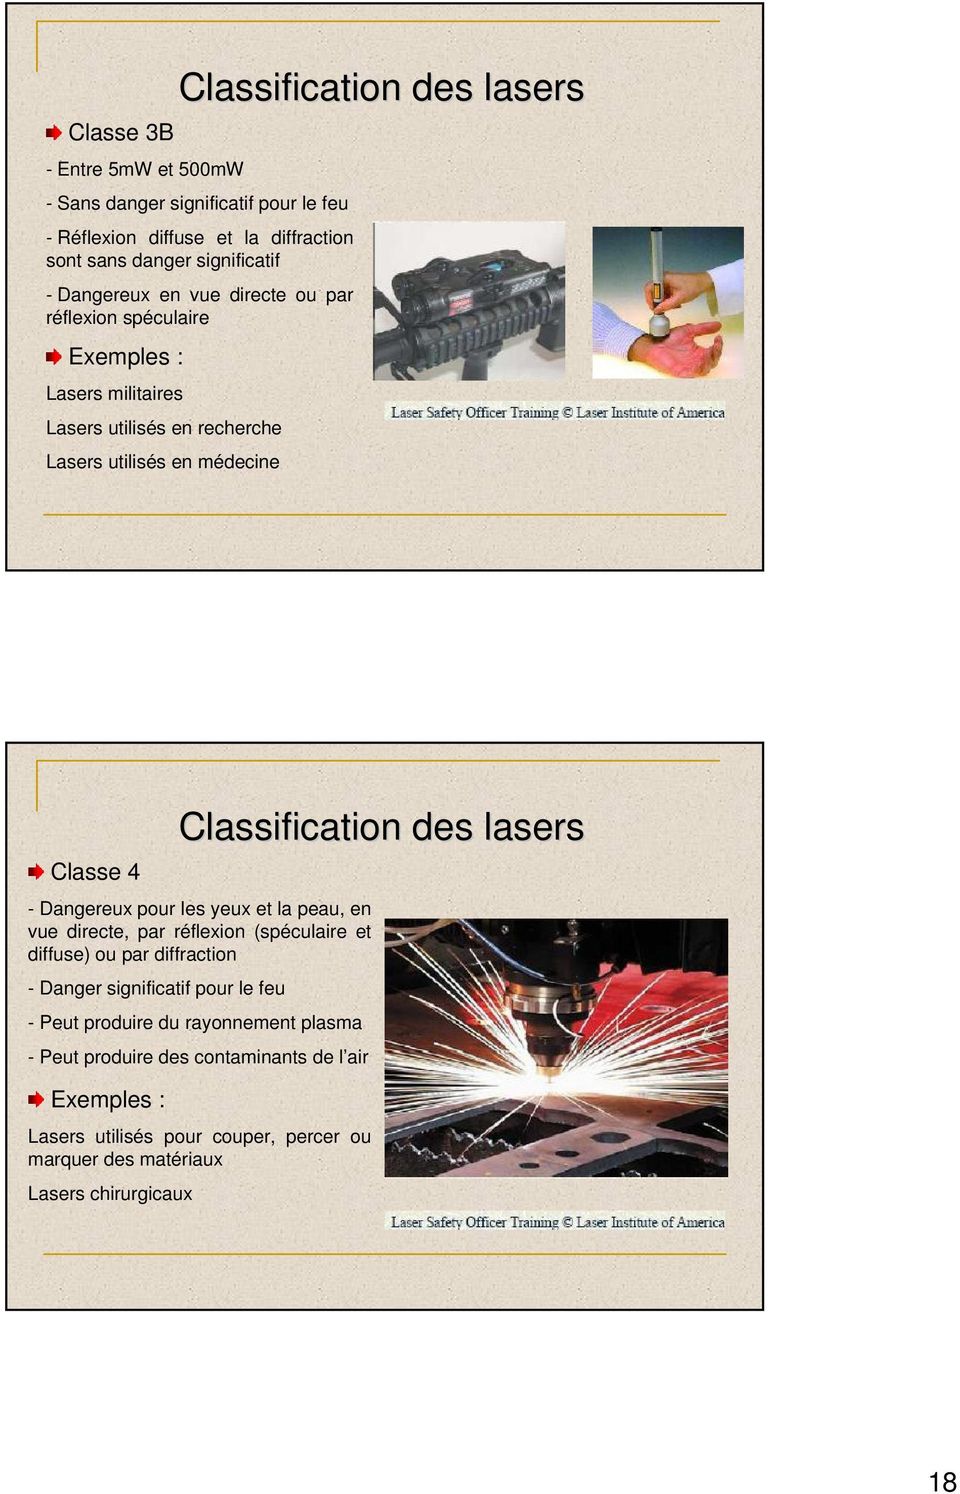 des lasers - Dangereux pour les yeux et la peau, en vue directe, par réflexion (spéculaire et diffuse) ou par diffraction - Danger significatif pour le feu - Peut